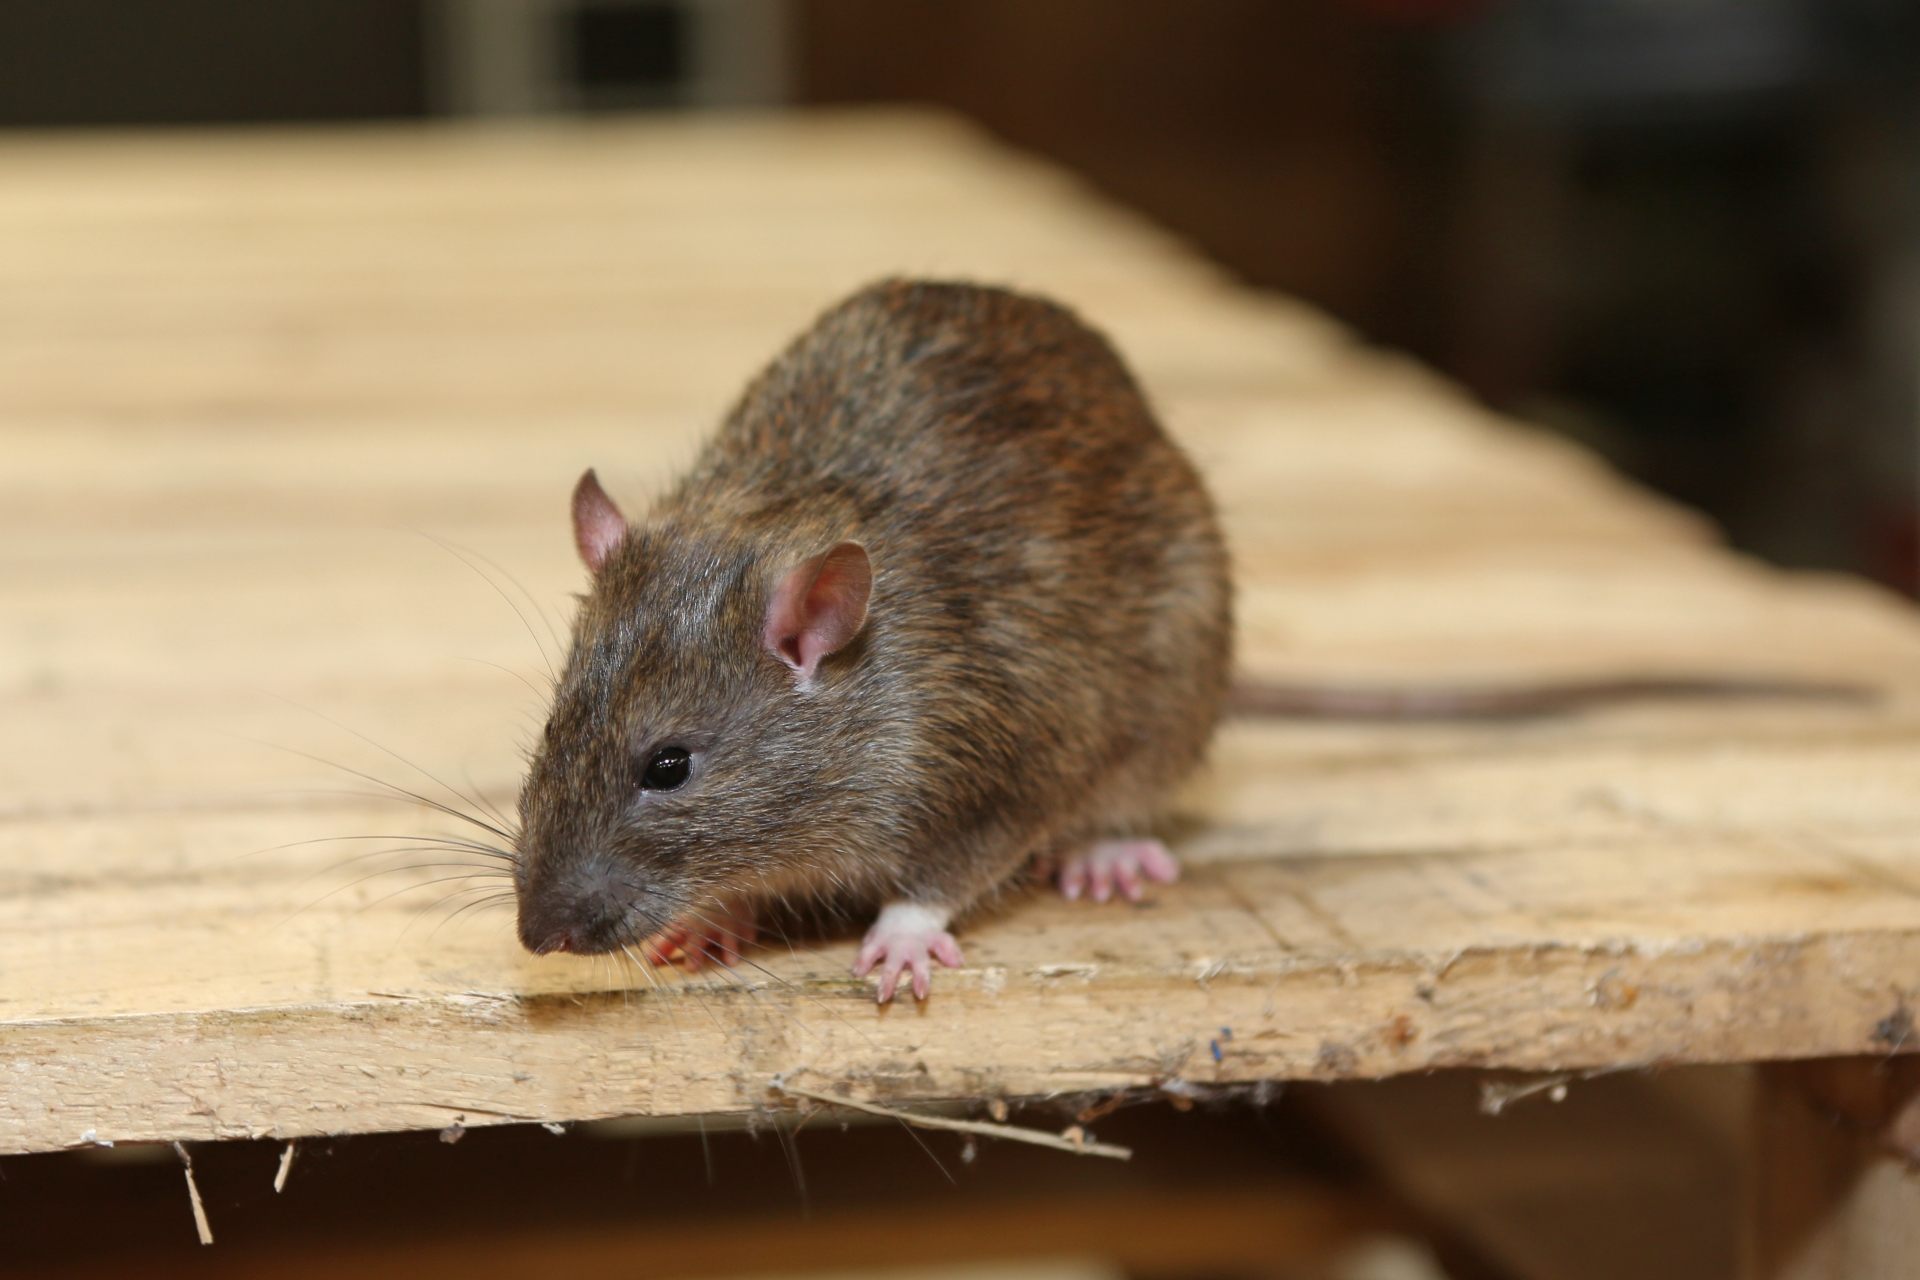 Rat extermination, Pest Control in Rainham, RM13. Call Now 020 8166 9746